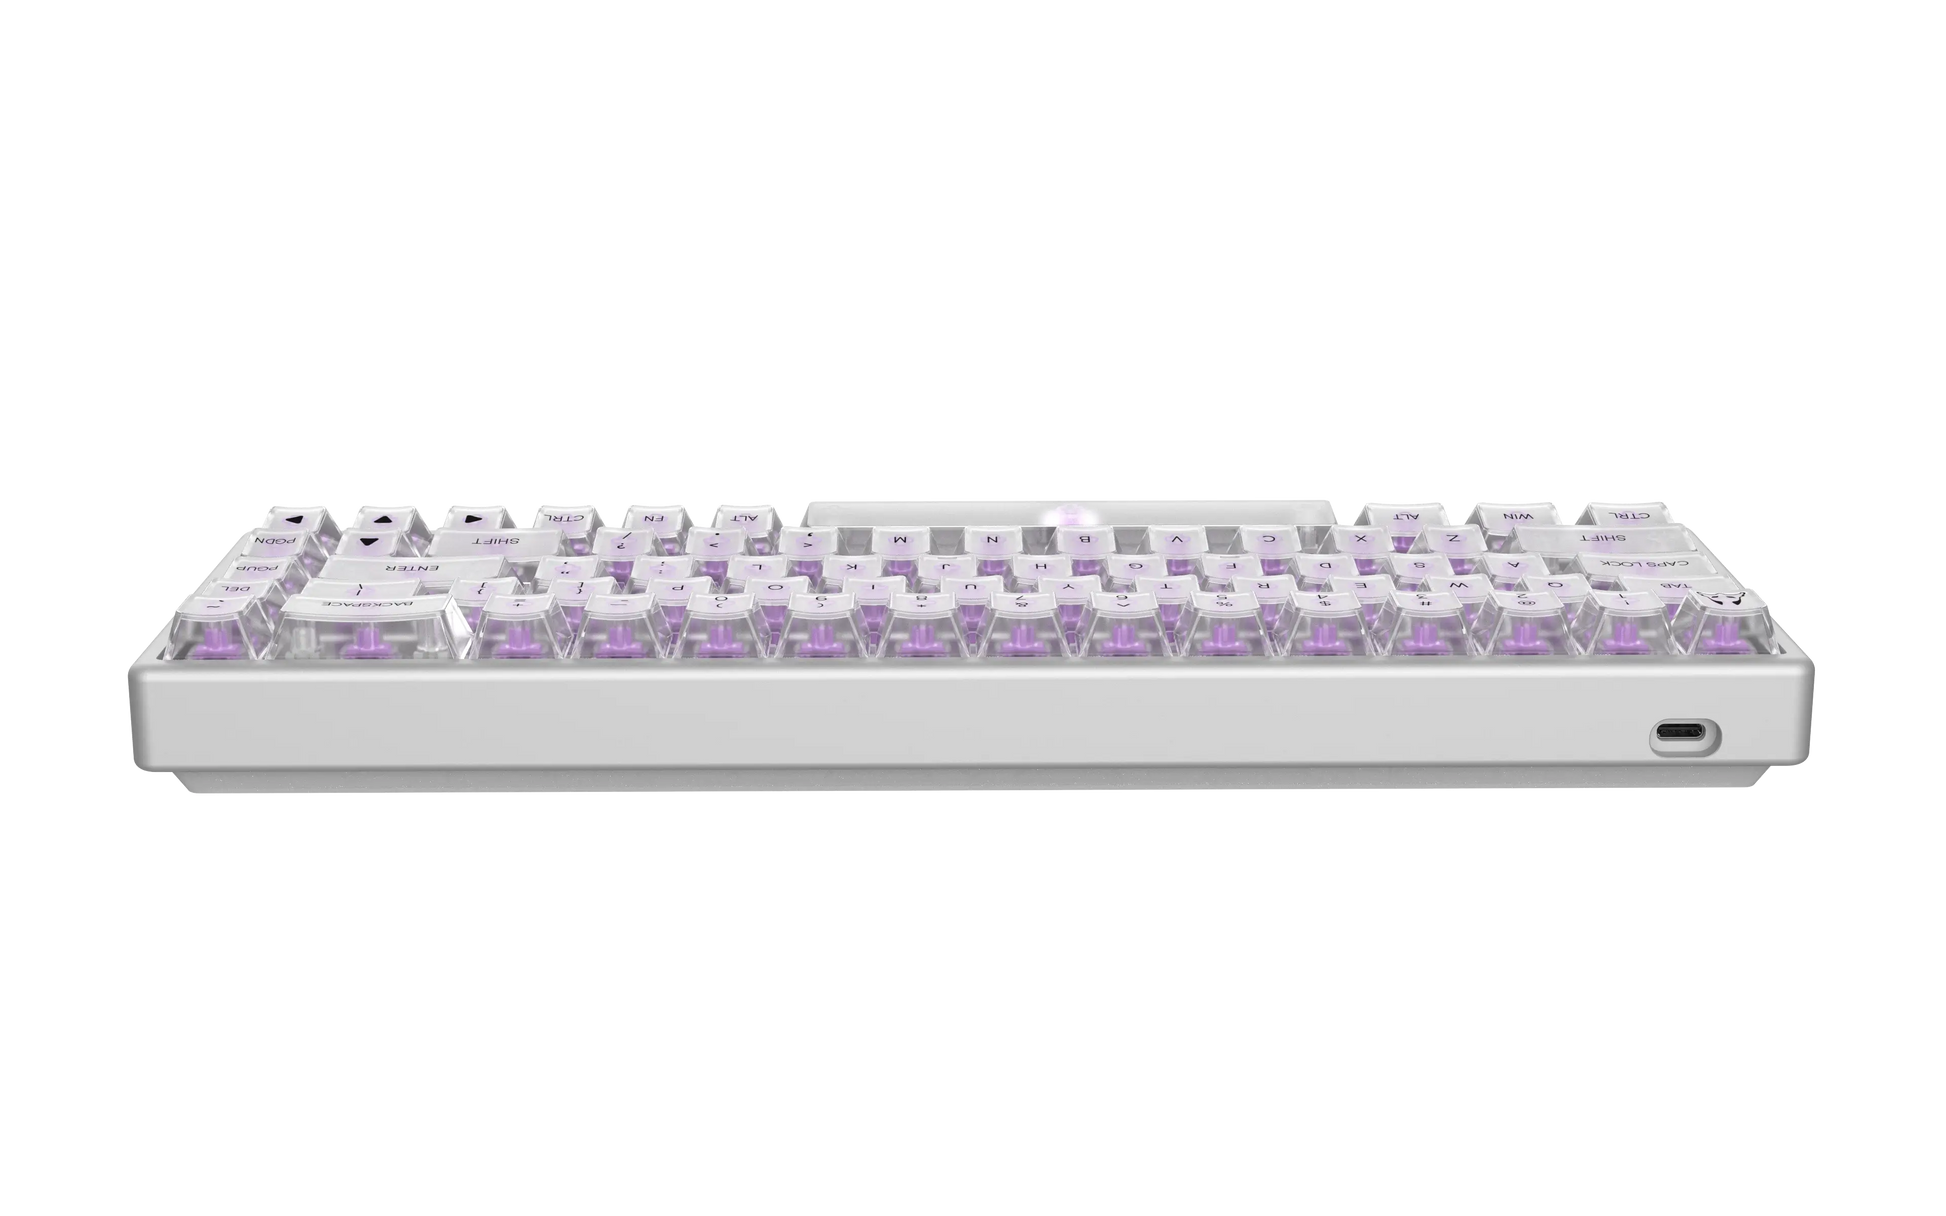 Polar 65 Magnetic Keyboard - Phantom Series